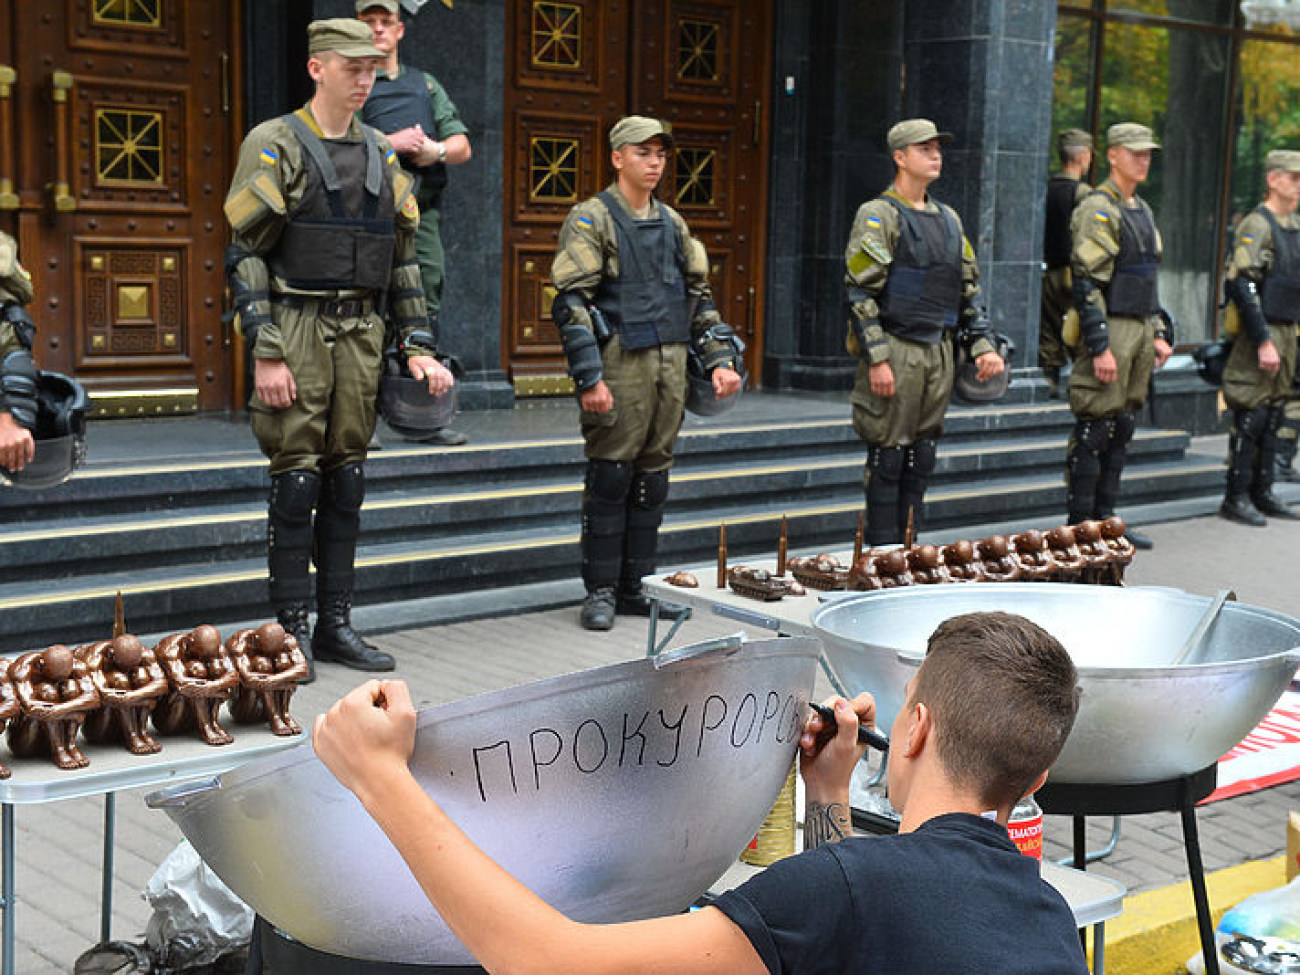 Участники АТО, волонтеры, правозащитники протестовали против военного прокурора